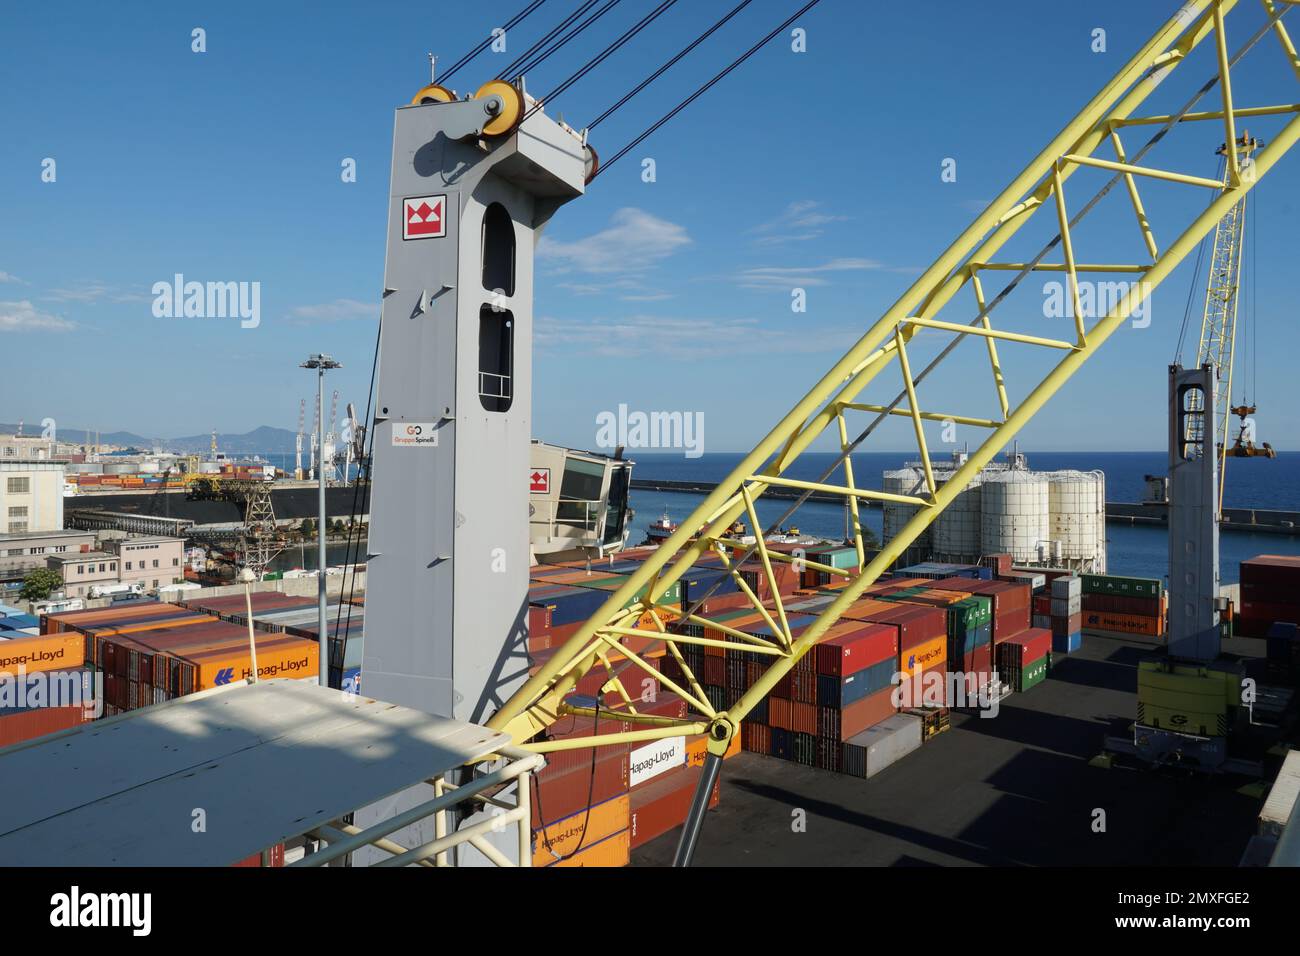 Vista sul terminal container e sulle gru mobili con spanditore per operazioni di carico e scarico nel porto di Genova. Foto Stock